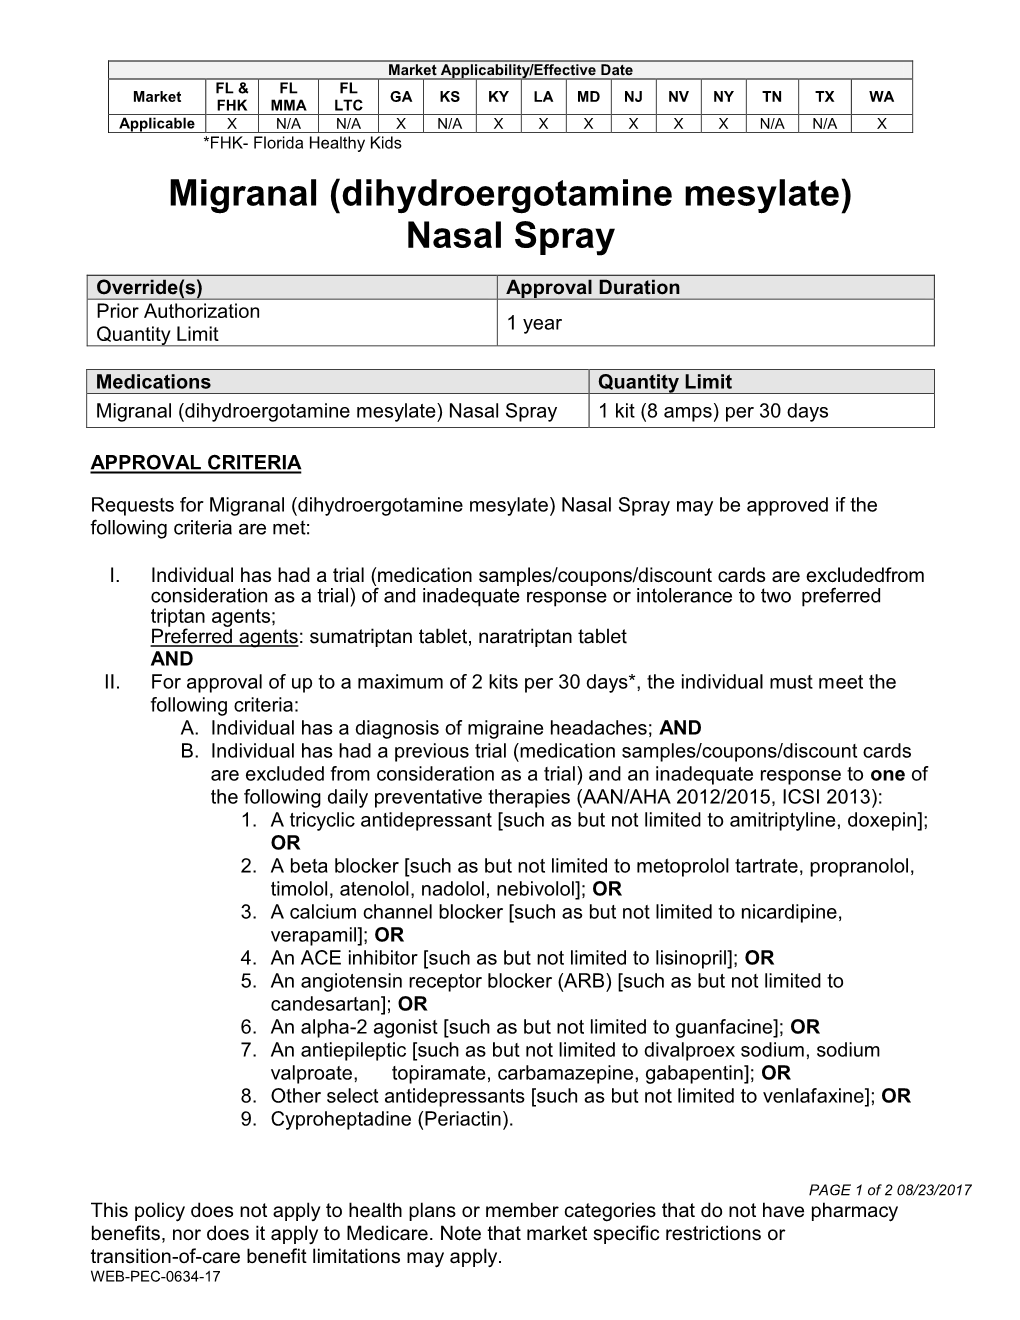 Migranal (Dihydroergotamine Mesylate) Nasal Spray